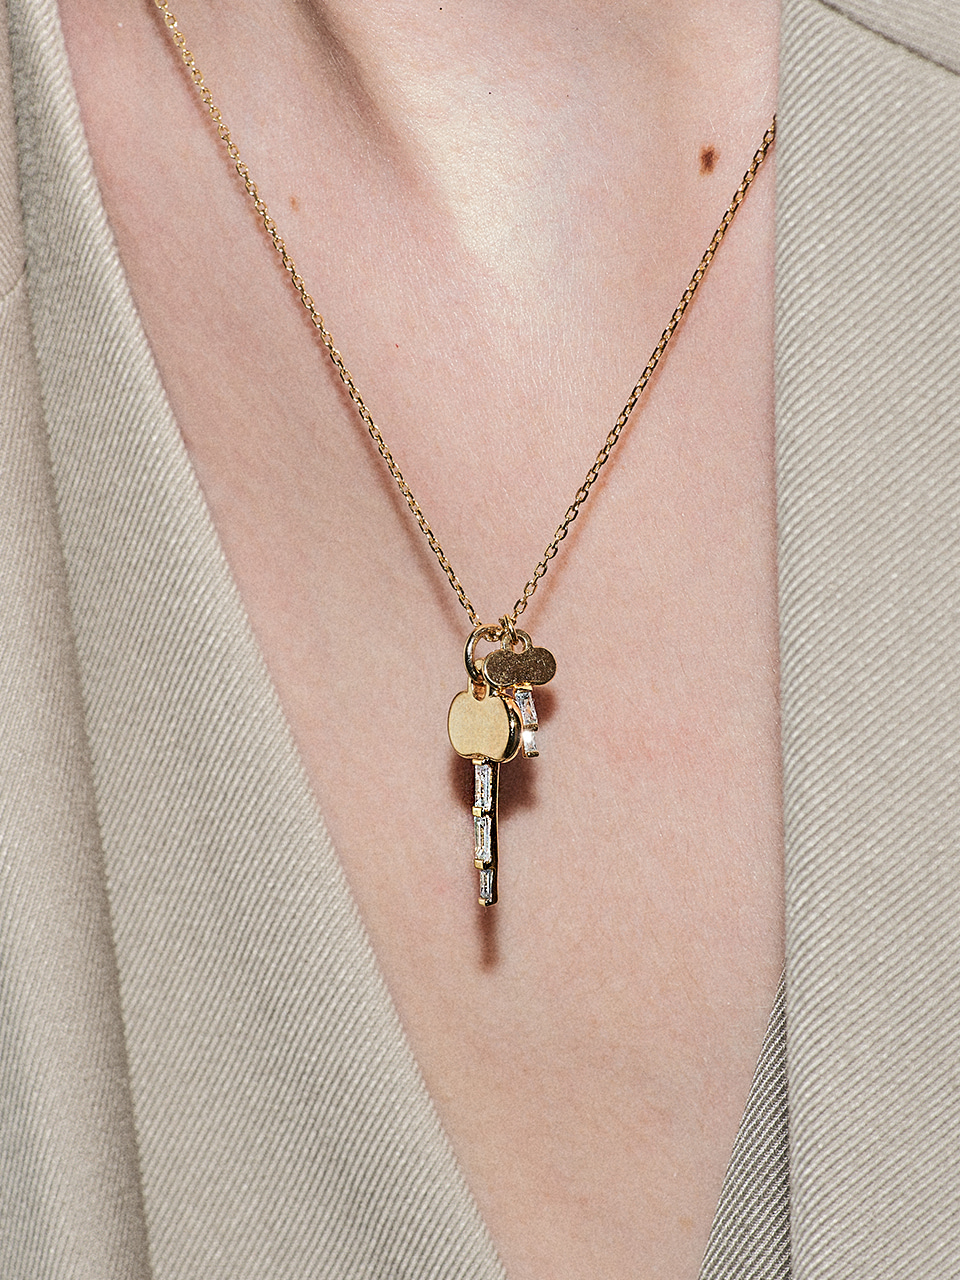 [김태리 착용][silver925]glisten key necklace